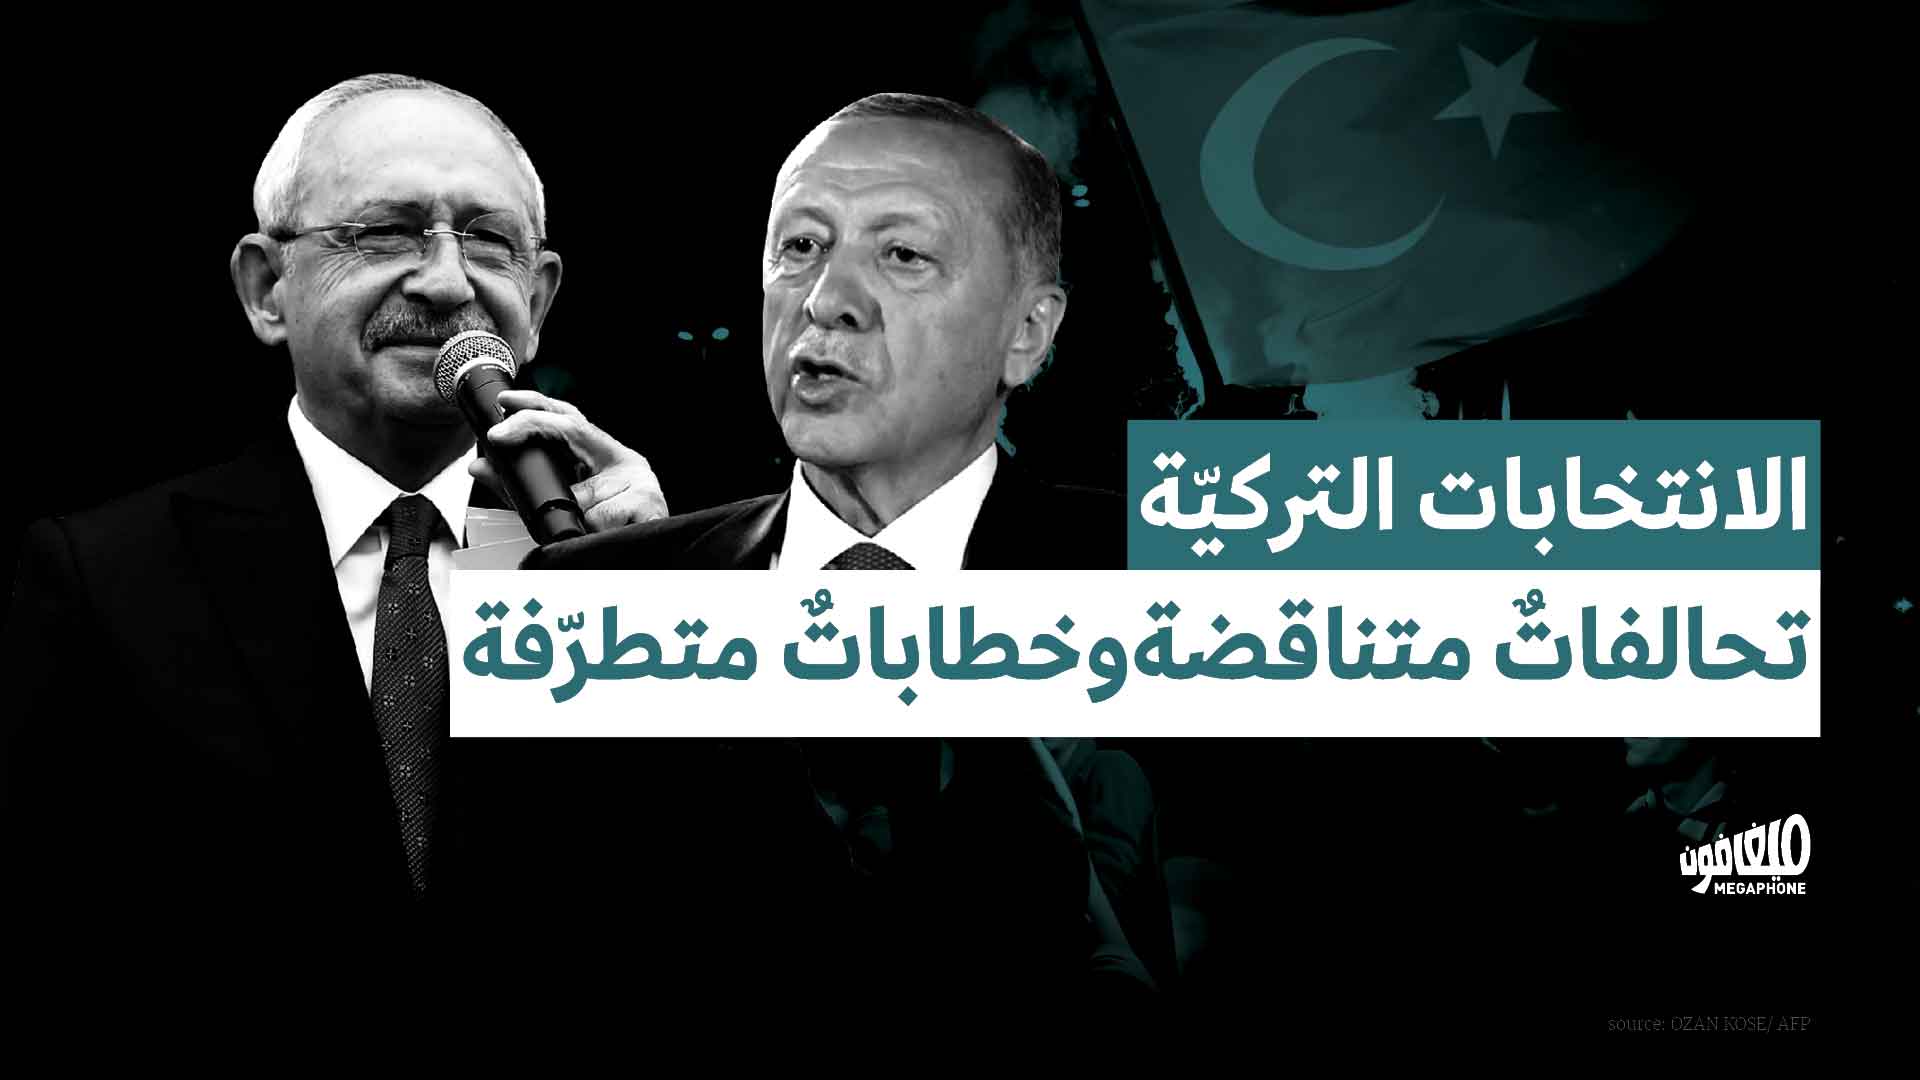 الانتخابات التركيّة: تحالفاتٌ متناقضة وخطاباتٌ متطرّفة